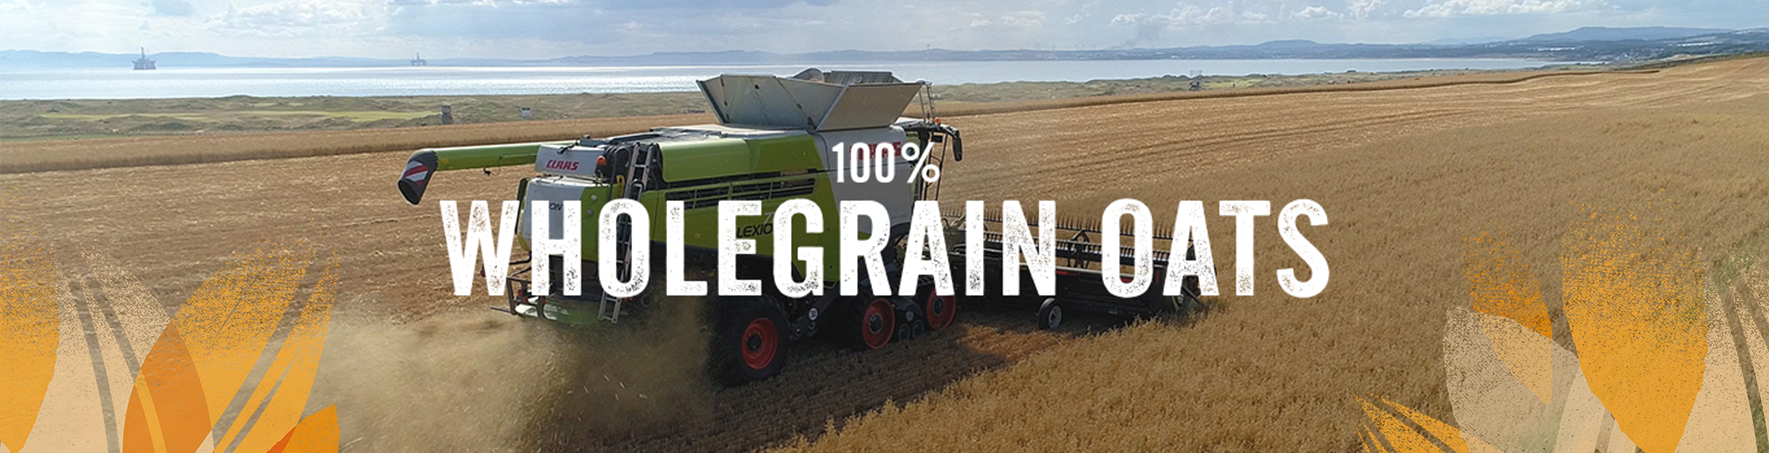 100% Wholegrain oats